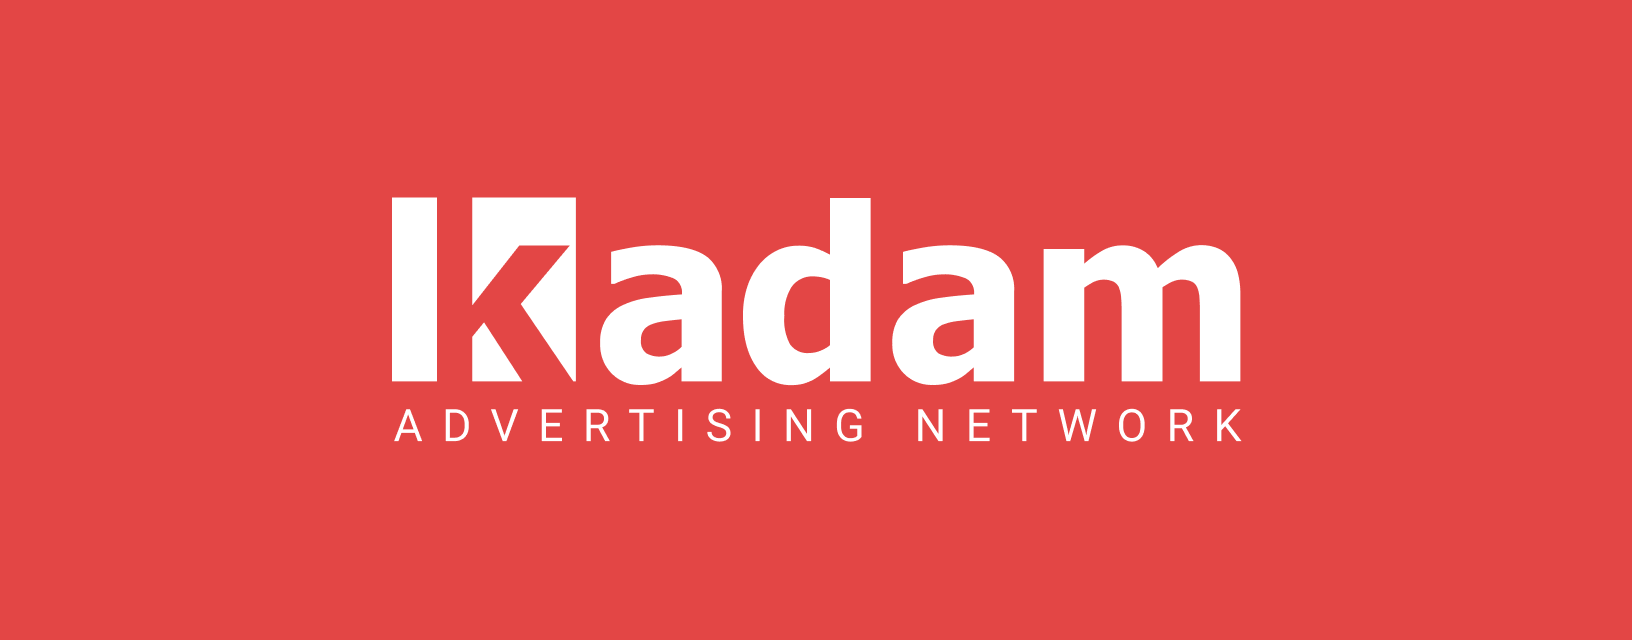 Kadam_desktop